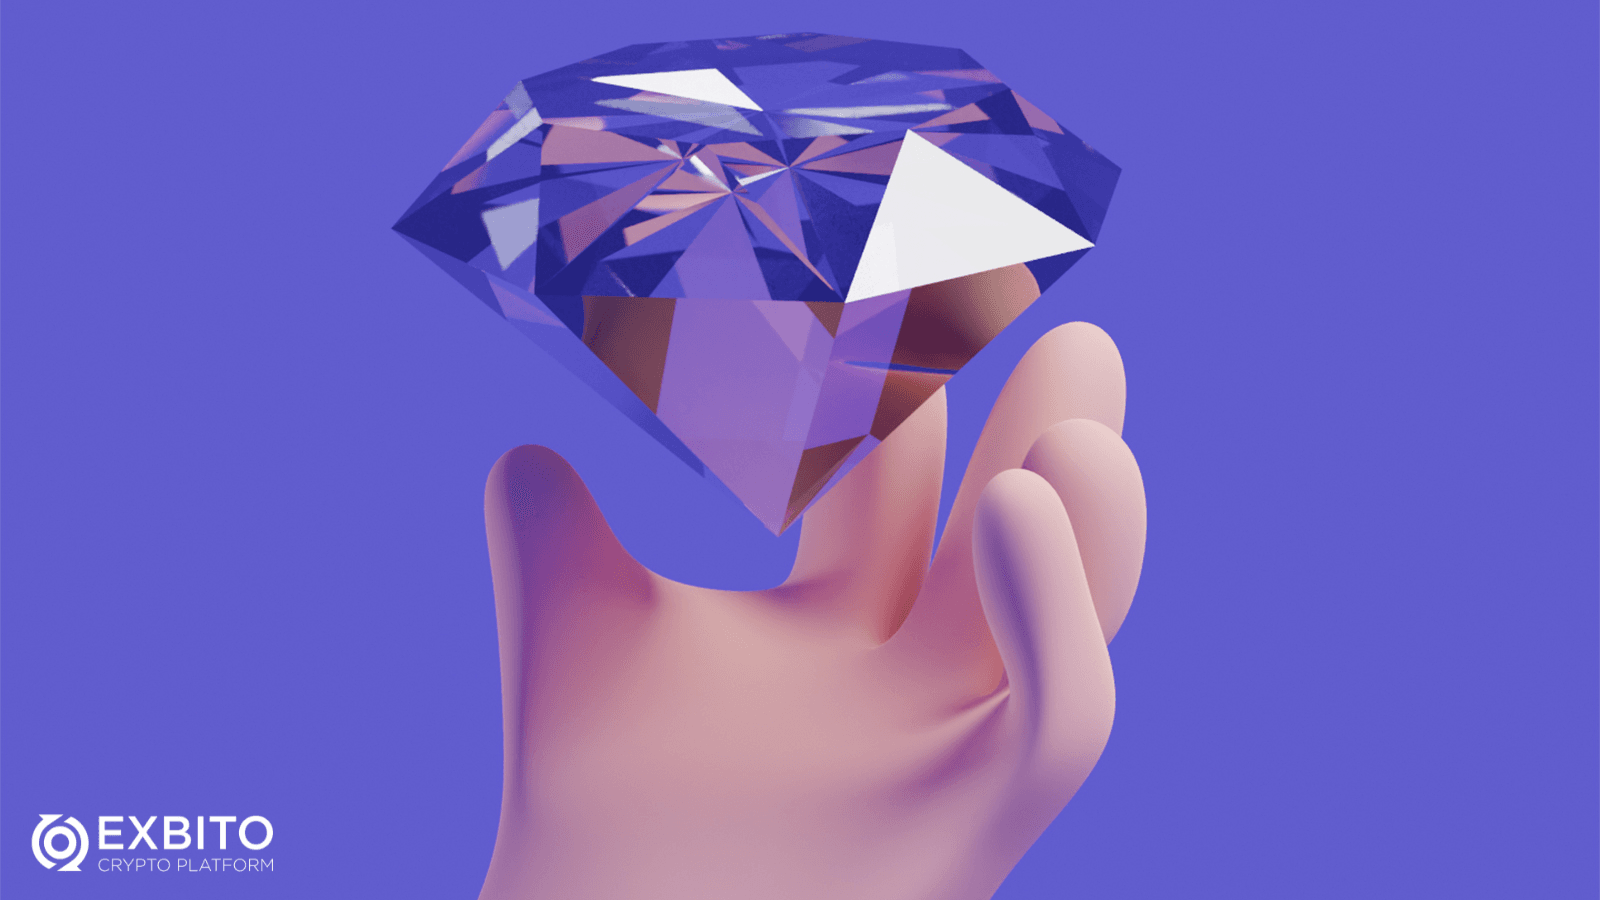 دست الماسی (Diamond Hands) در کریپتو به چه معناست؟